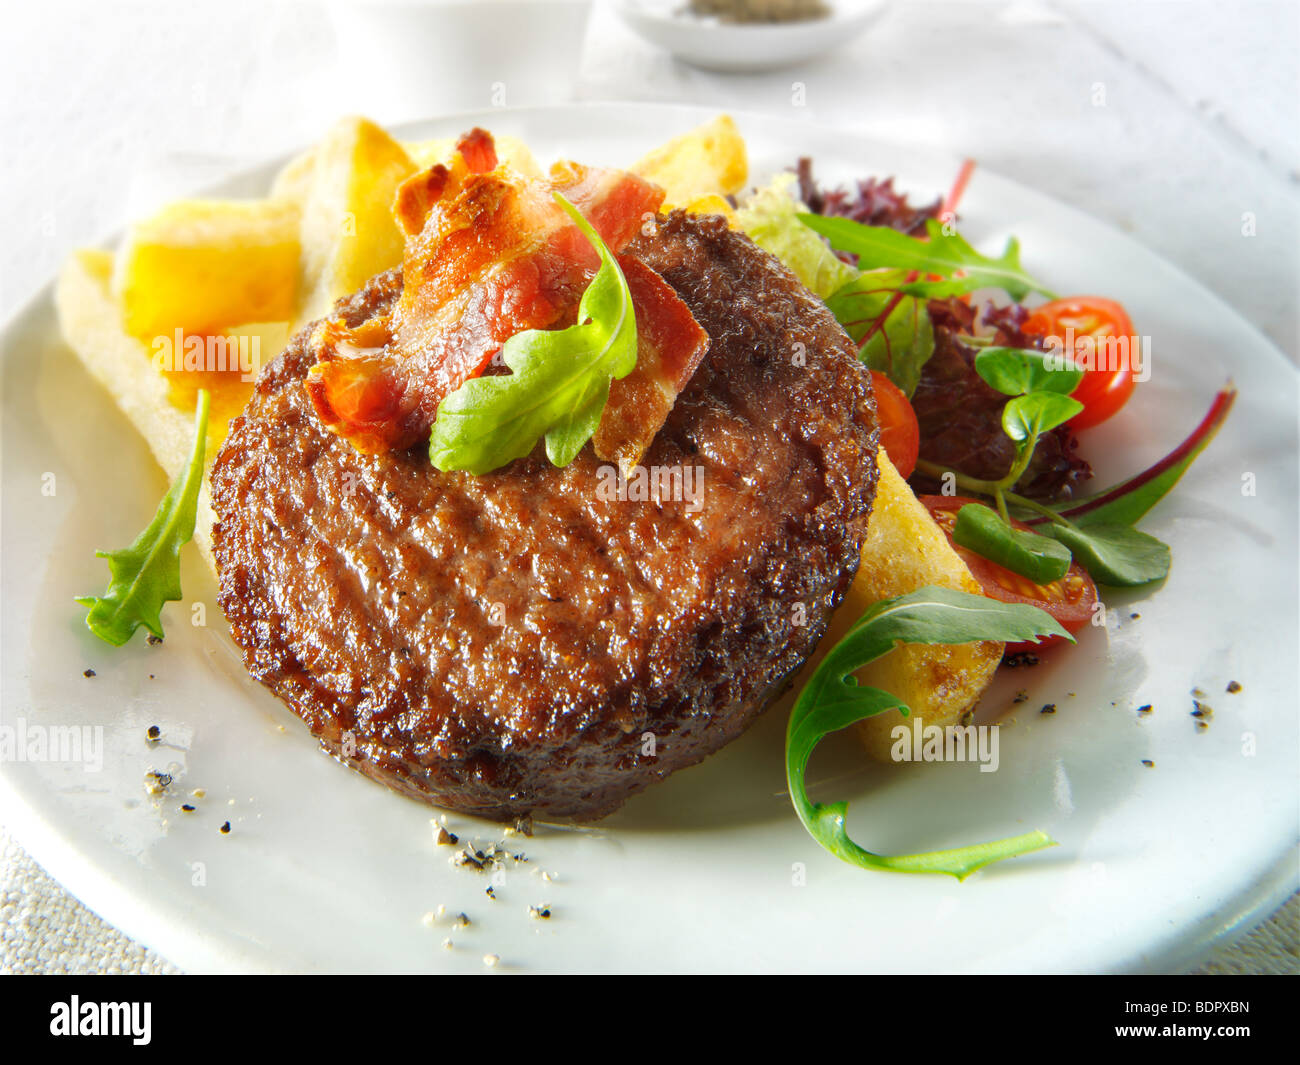 Burger de boeuf grillé et du bacon avec des frites et de la salade chunky Banque D'Images